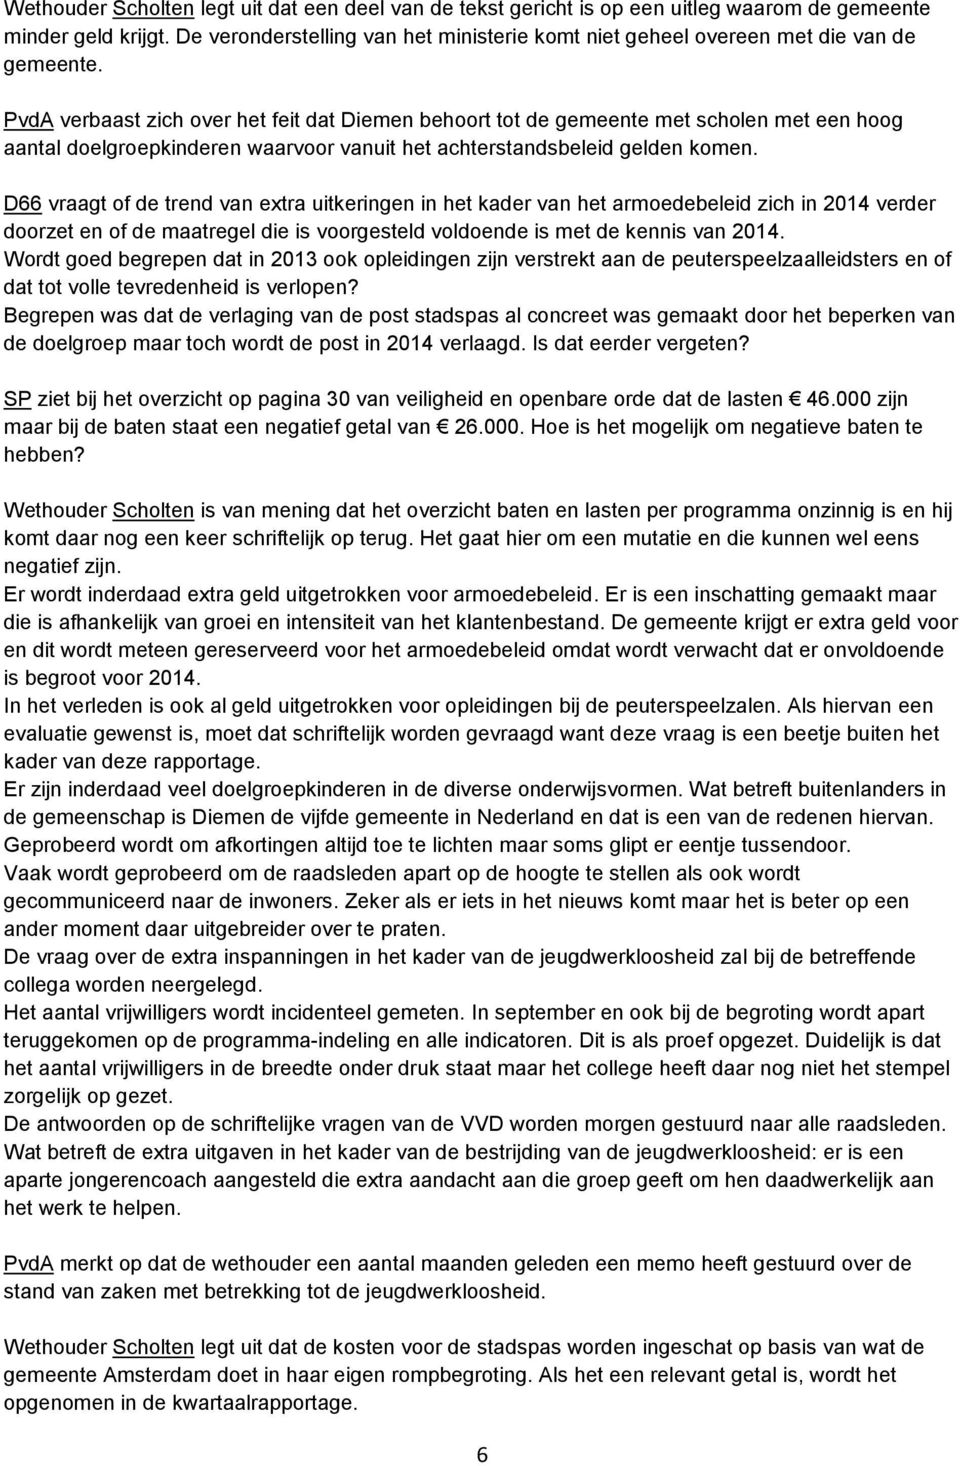 PvdA verbaast zich over het feit dat Diemen behoort tot de gemeente met scholen met een hoog aantal doelgroepkinderen waarvoor vanuit het achterstandsbeleid gelden komen.